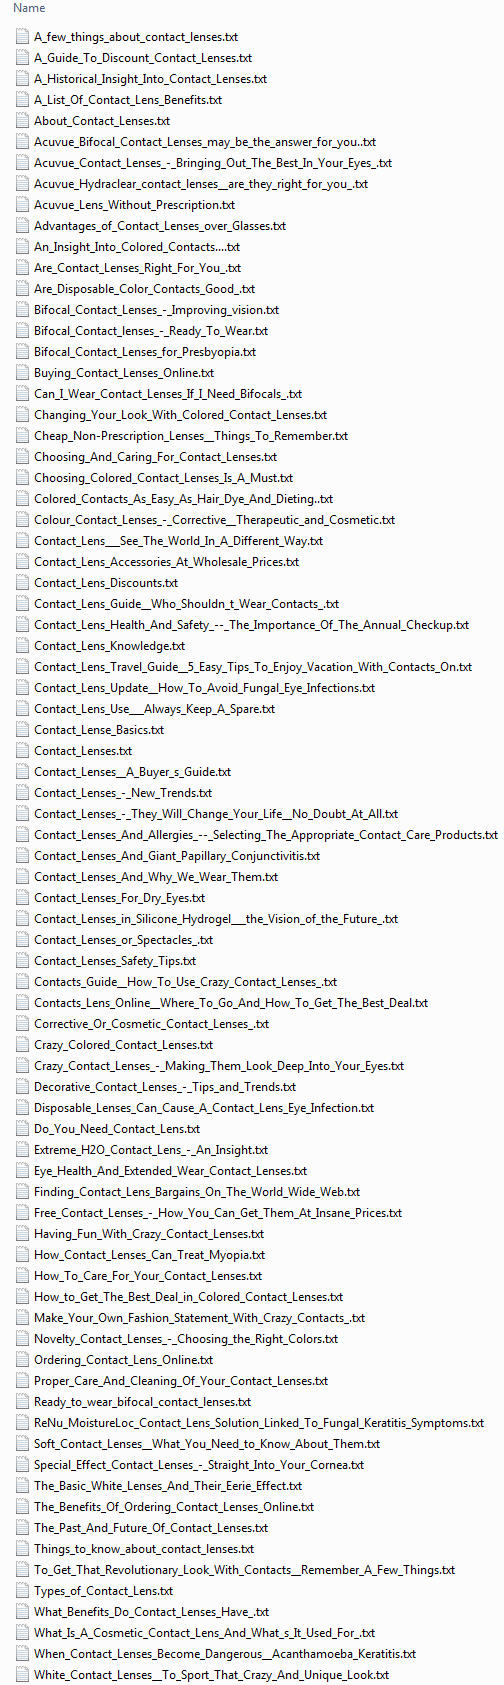 Contact Lenses PLR Articles